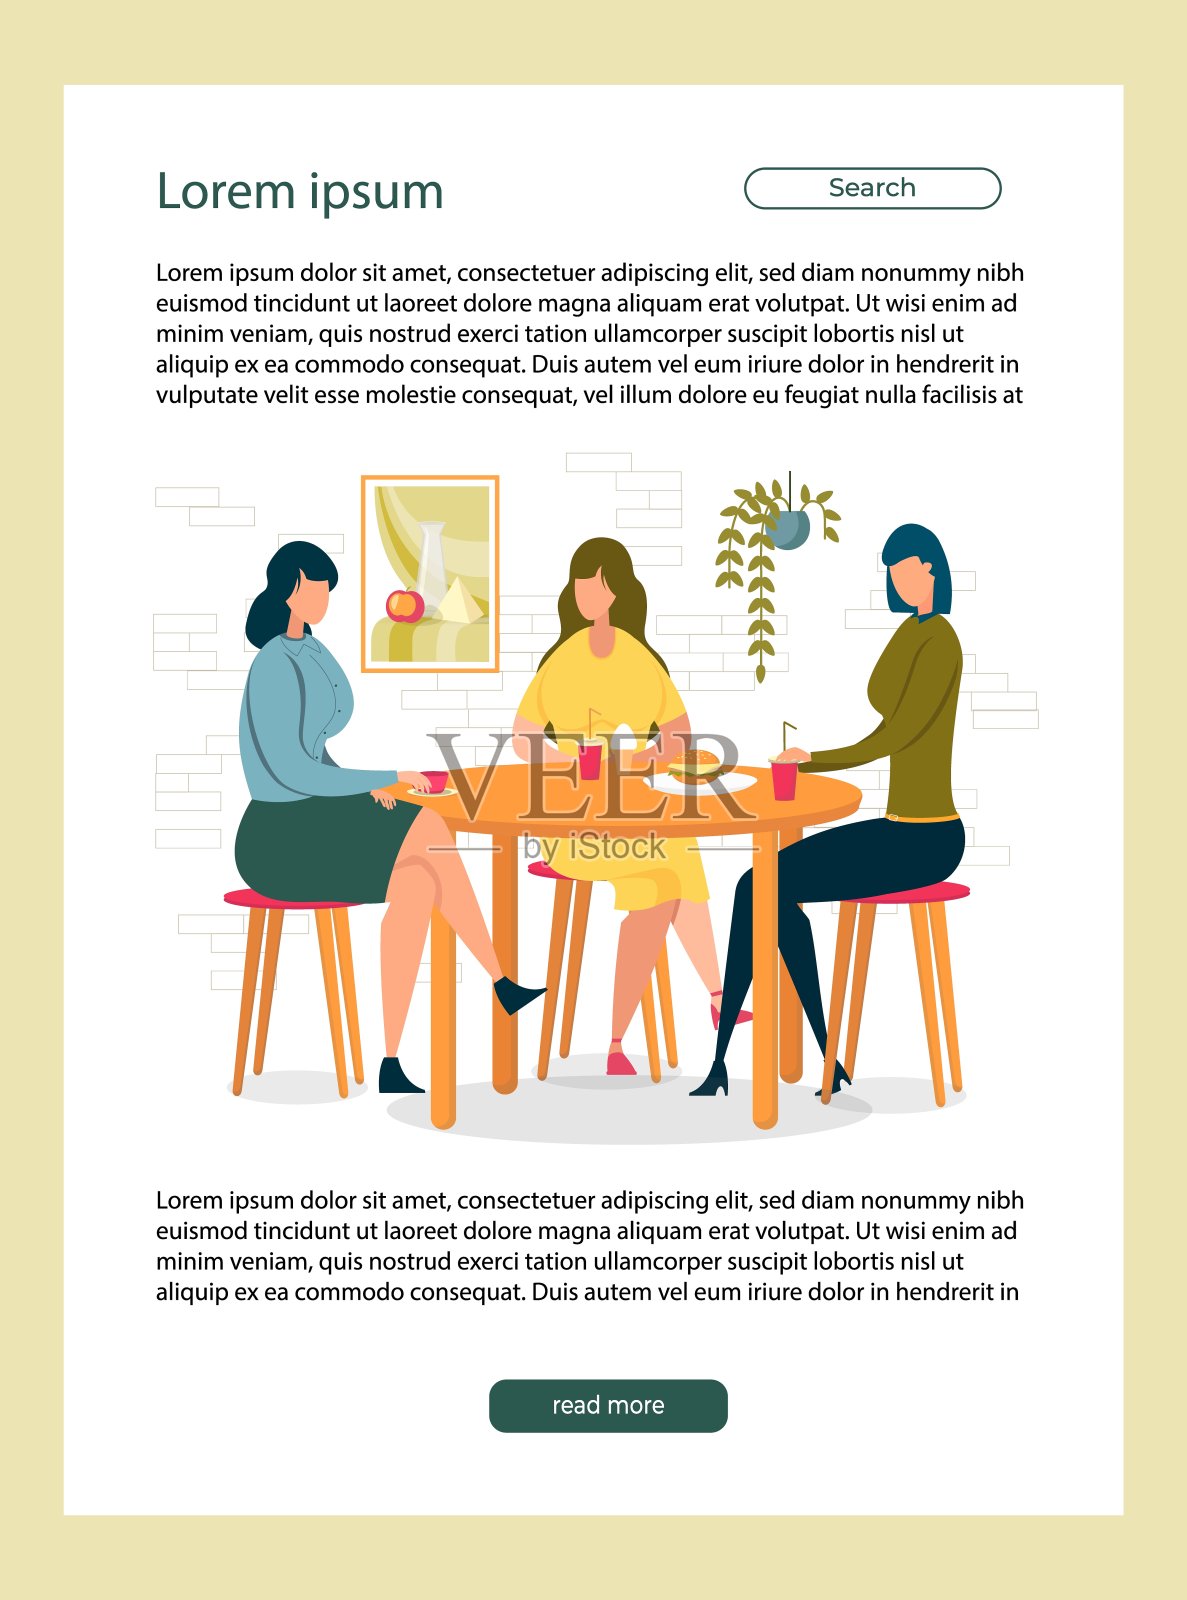 坐在餐桌前吃快餐或垃圾食品的女性。设计模板素材